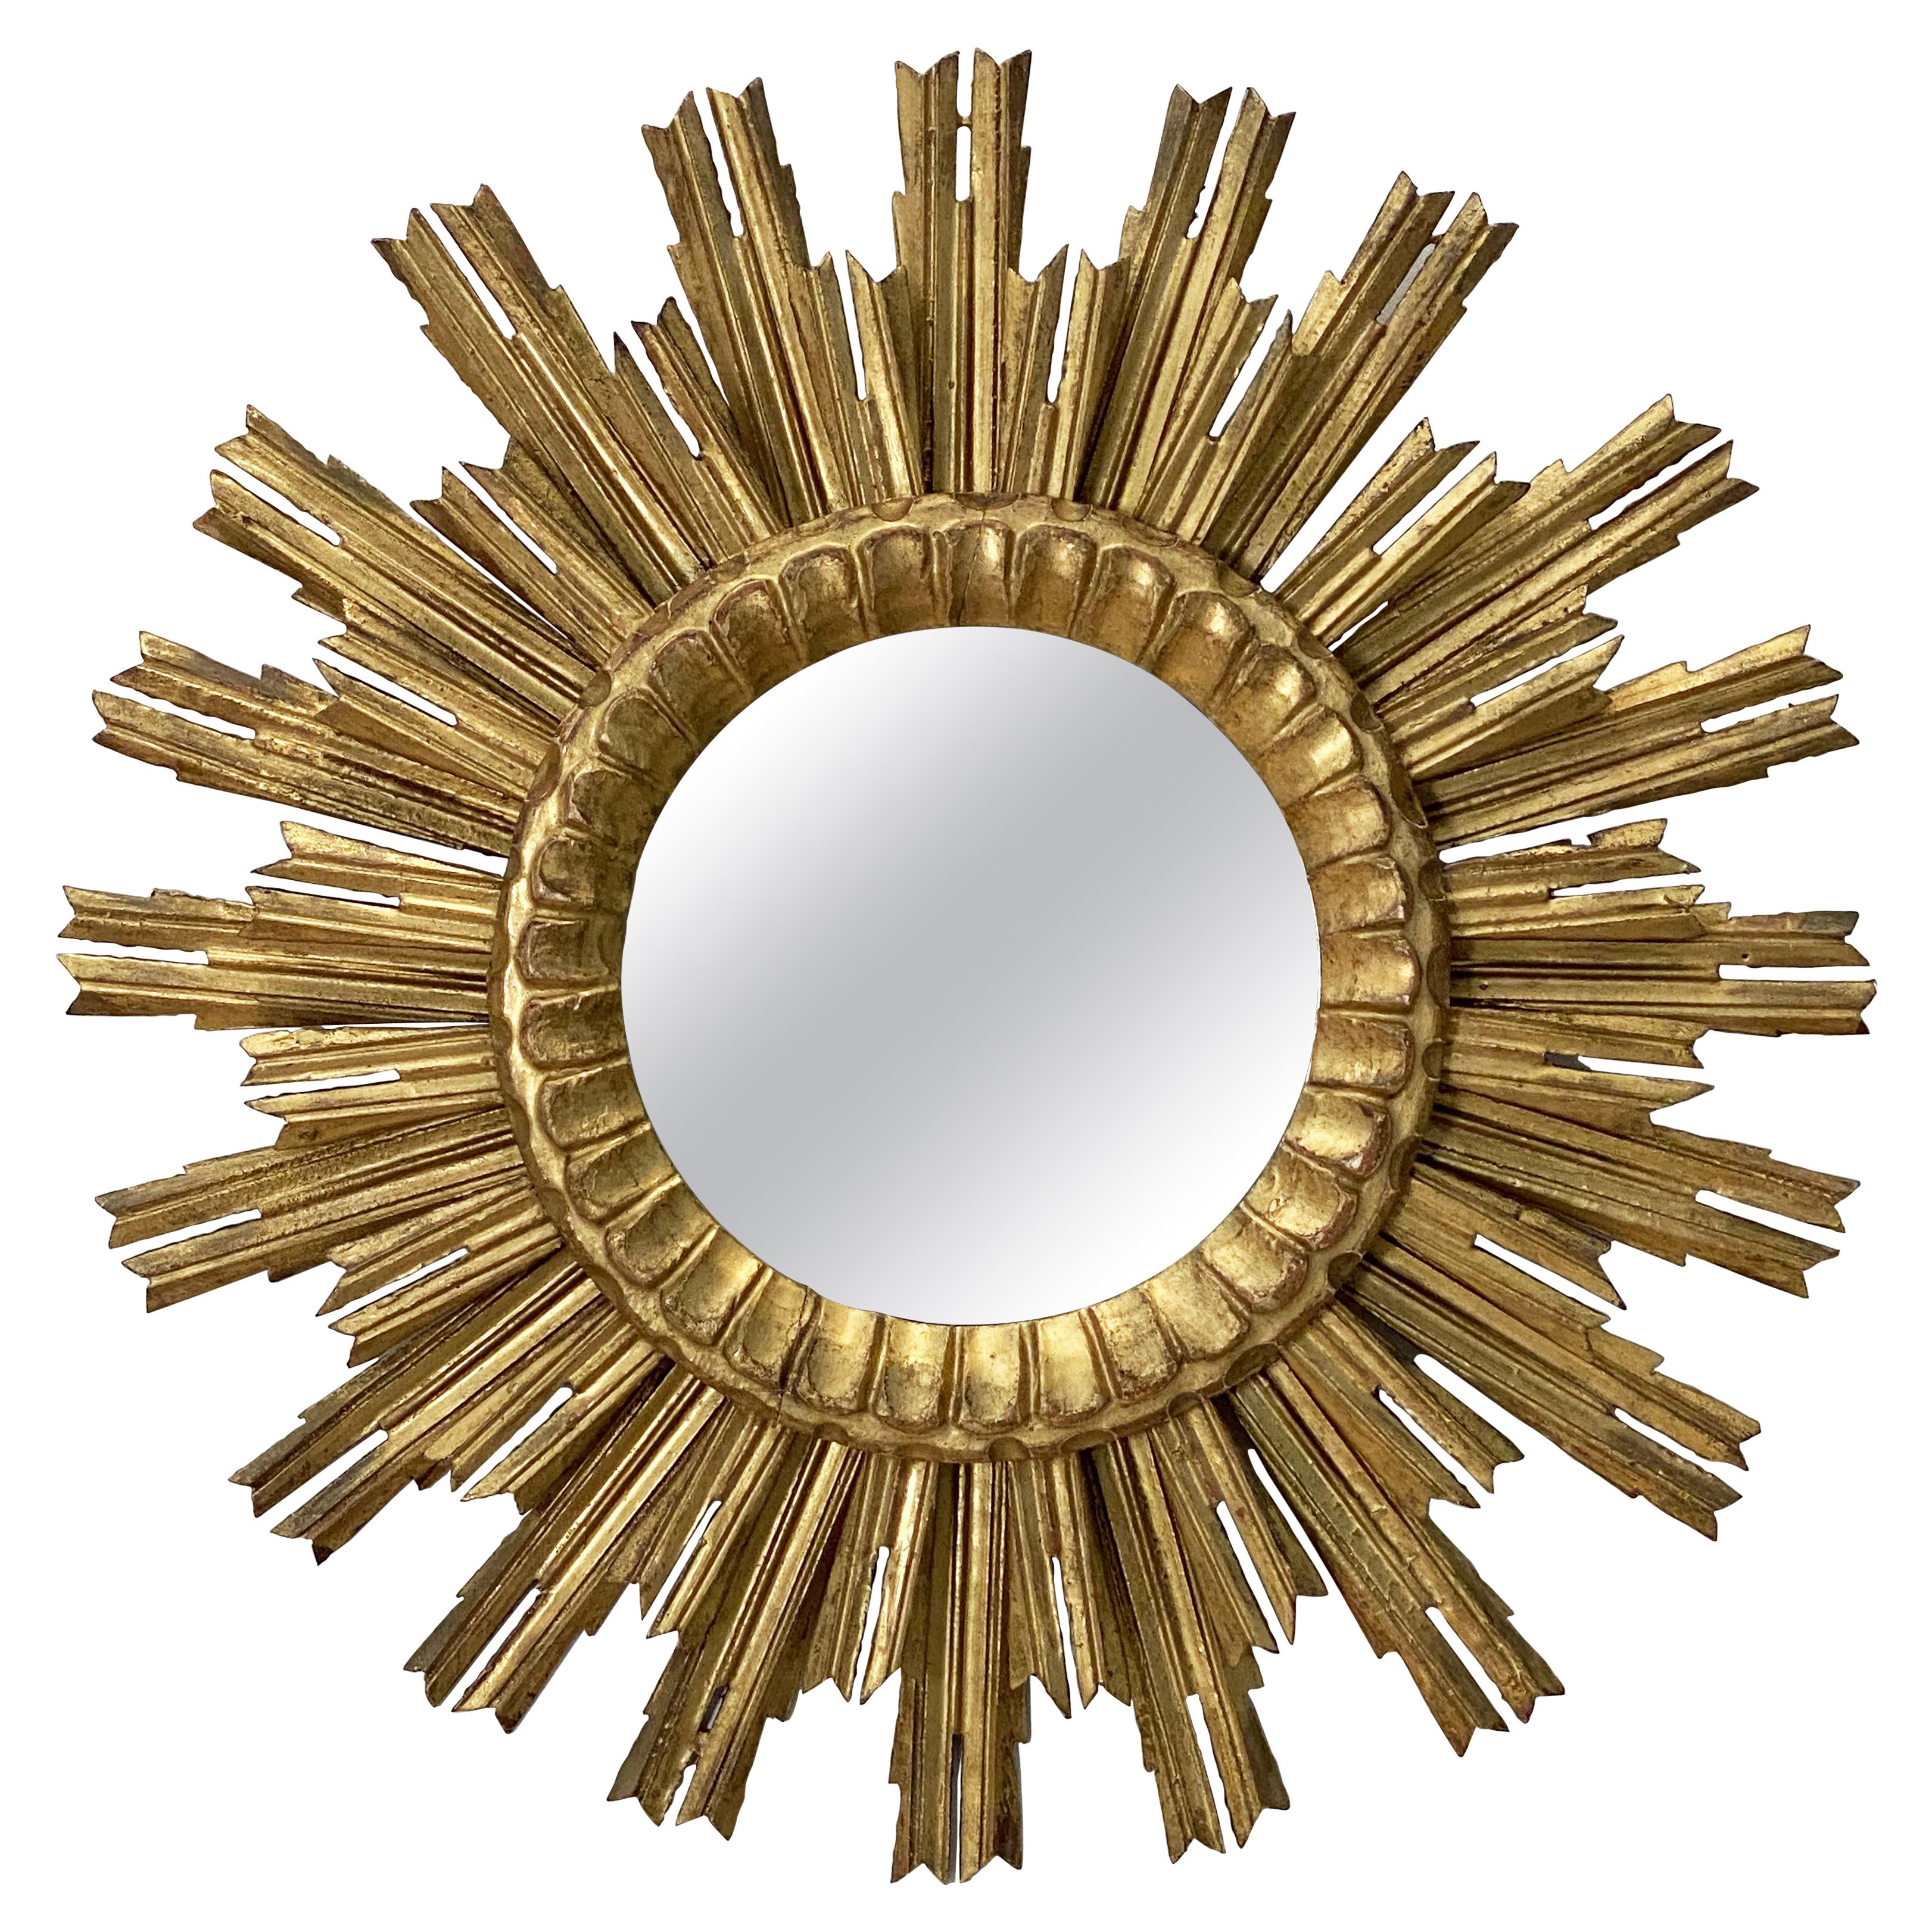 French Gilt Sunburst or Starburst Mirror (Diameter 24 1/2)